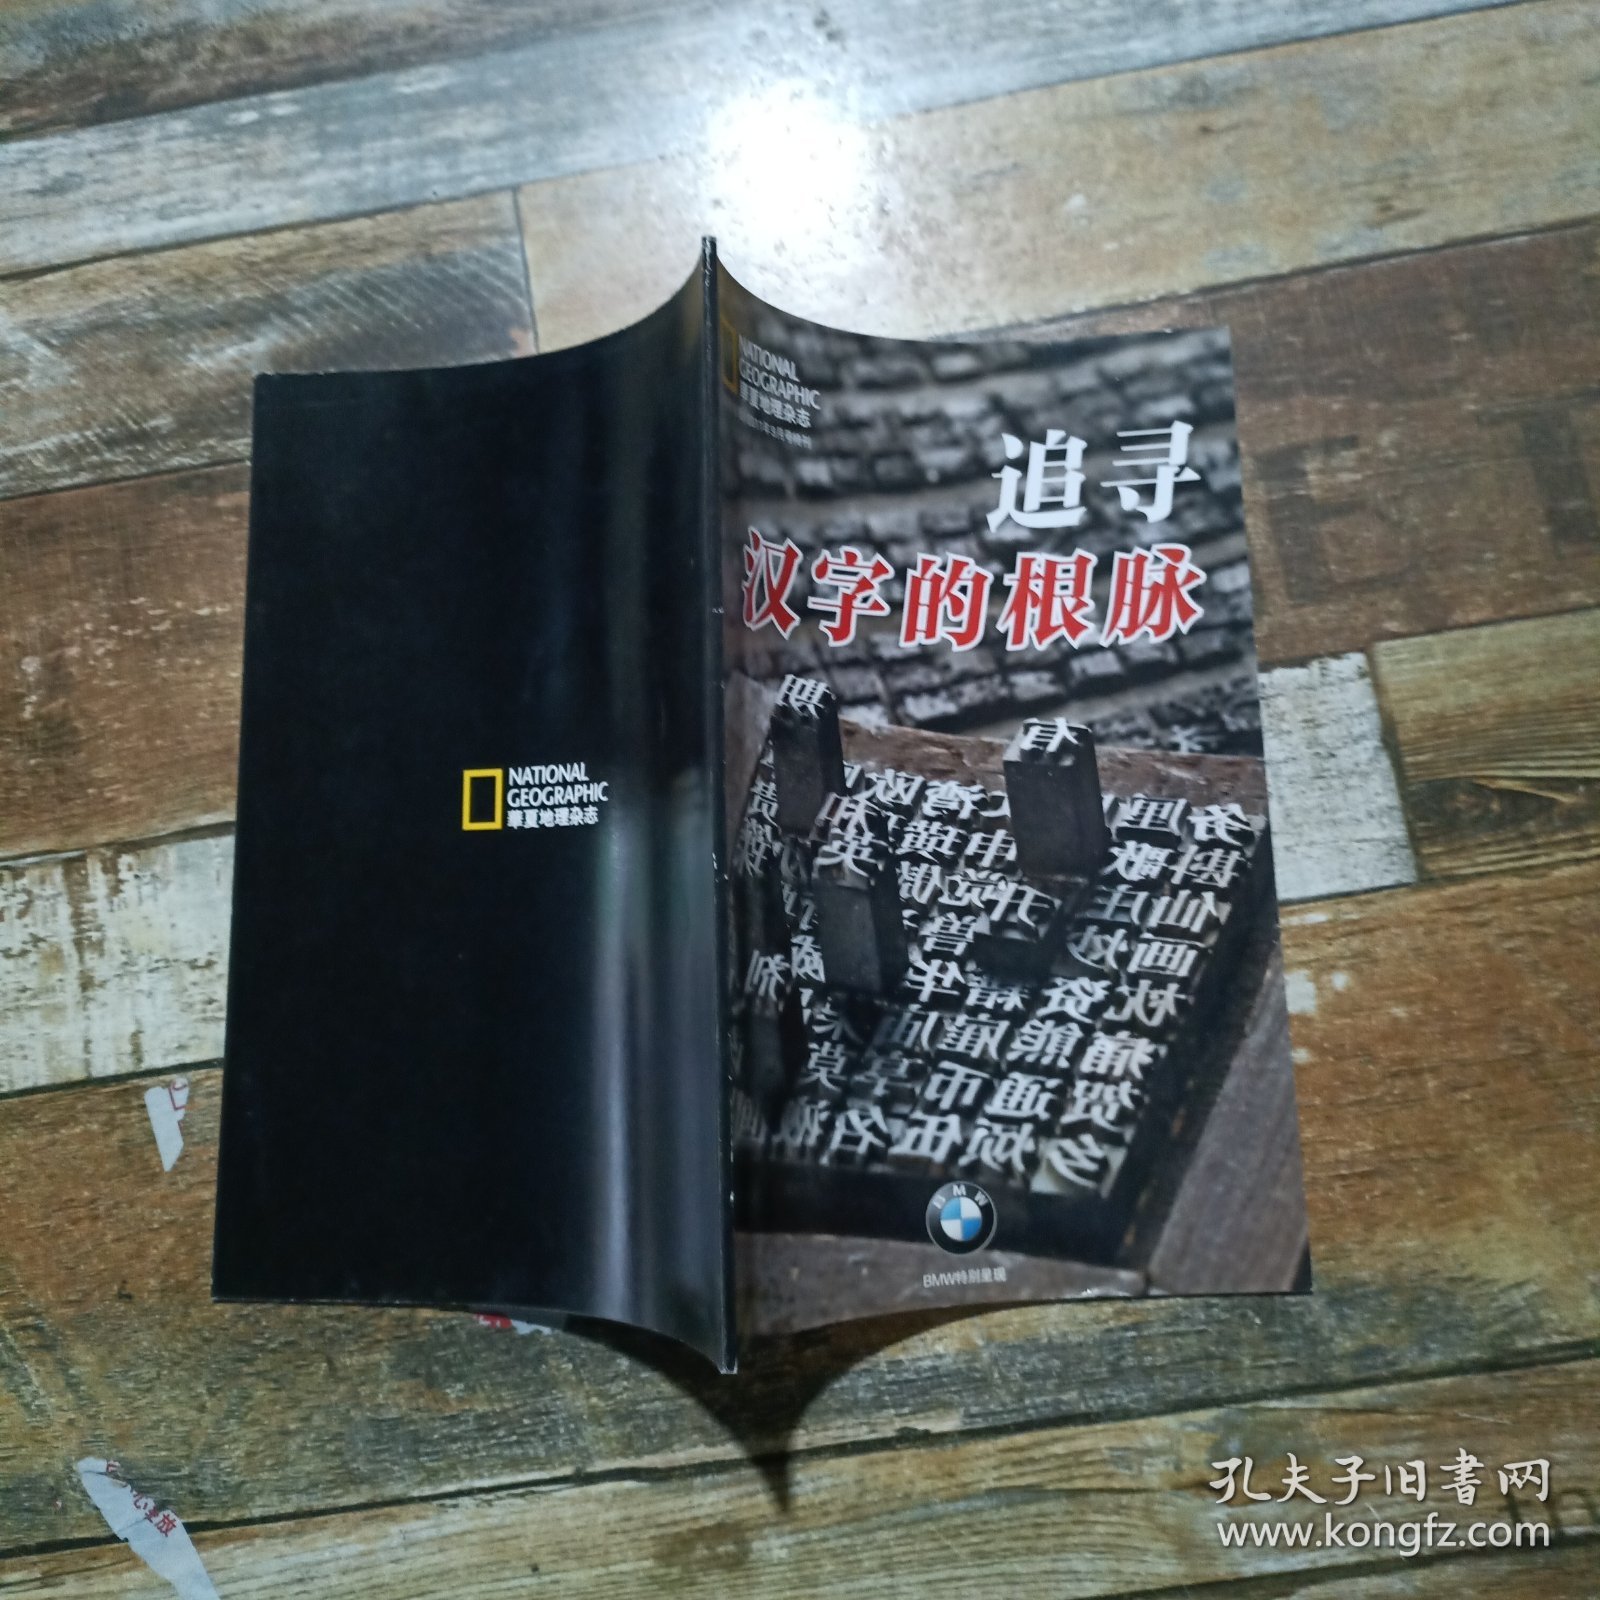 华夏地理杂志 2011.9特刊 追寻汉字的根脉